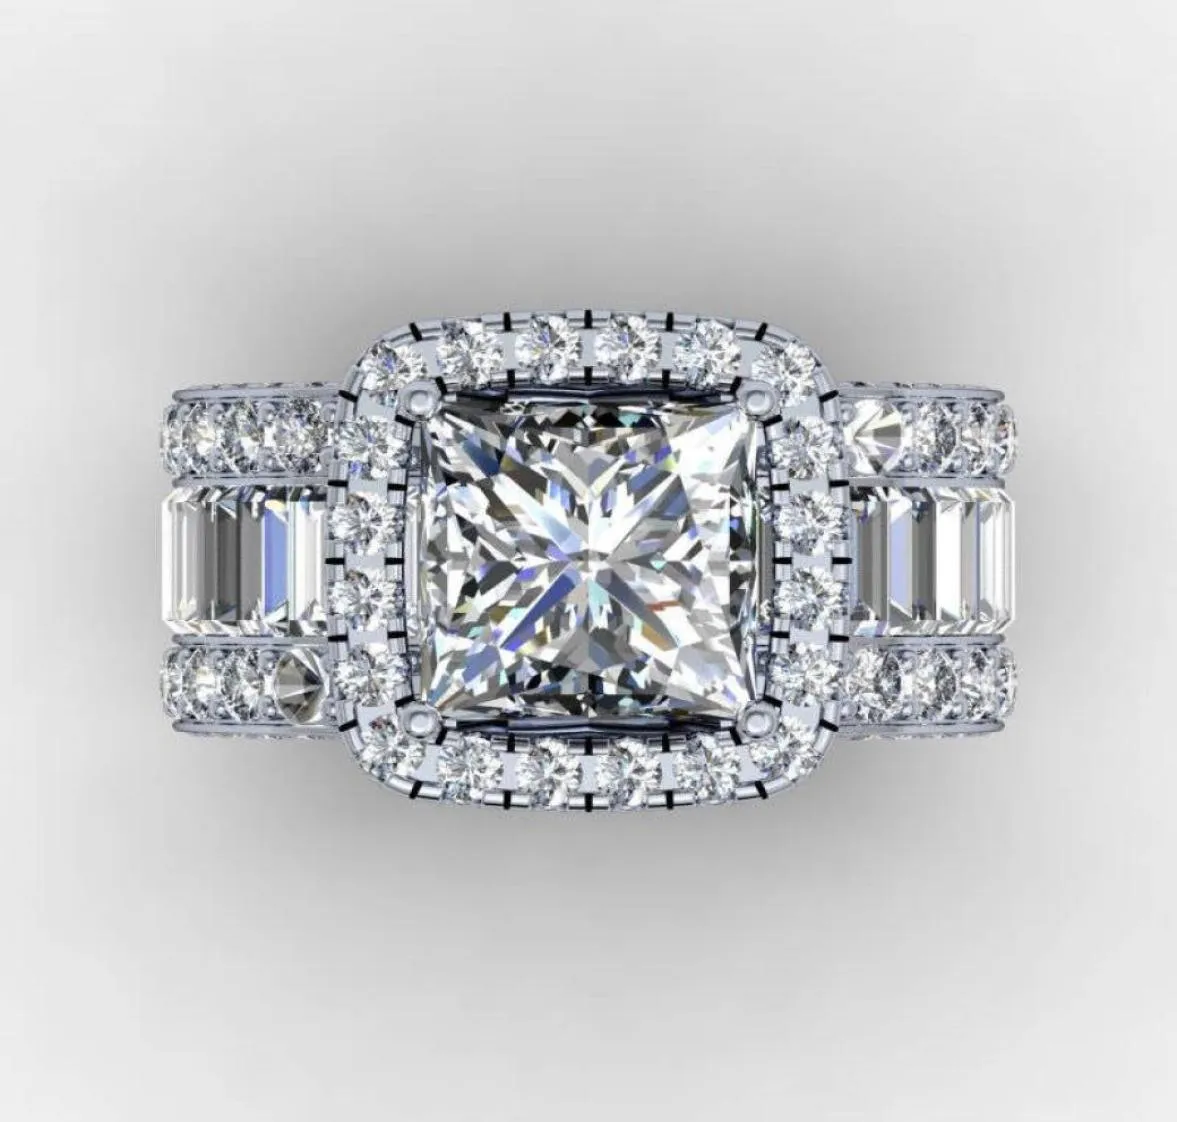 Vintage Lovers Court Ring 3ct Diamond 925 Sterling Silver Engagement Wedding Band Ring For Women Men Men Finger Sieraden Gift6817678